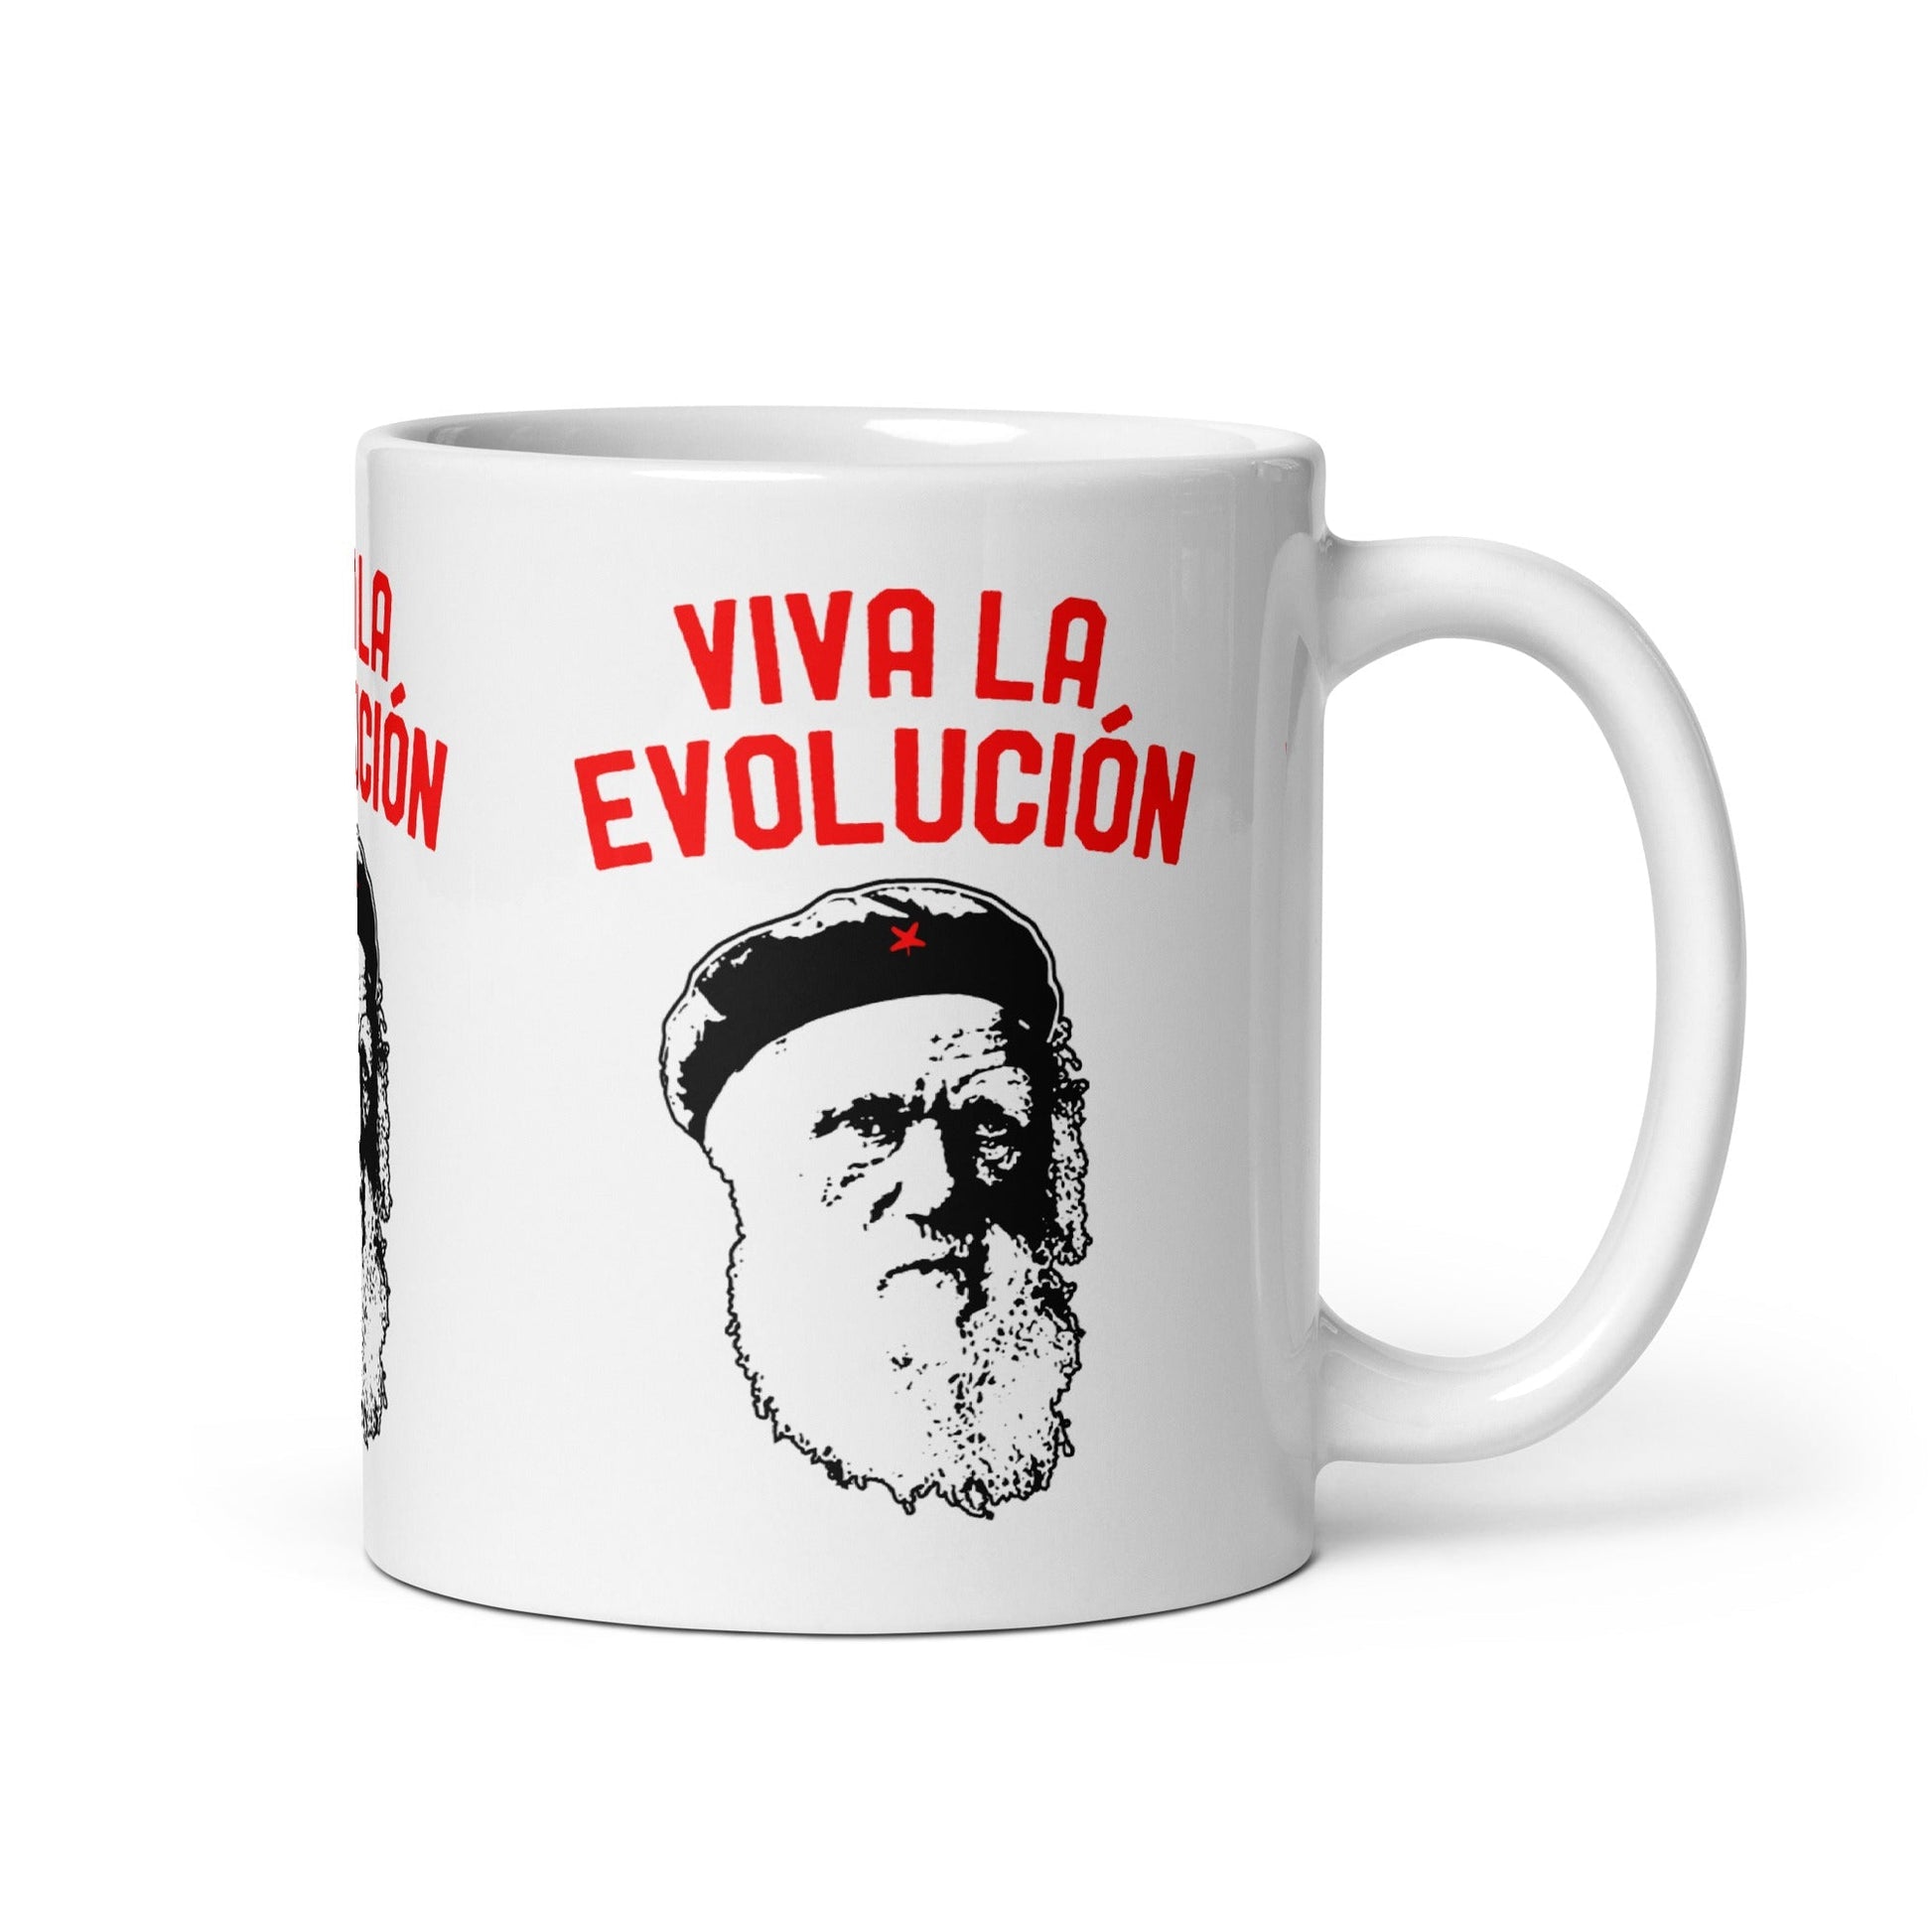 Darwin - Viva la Evolucion - Mug